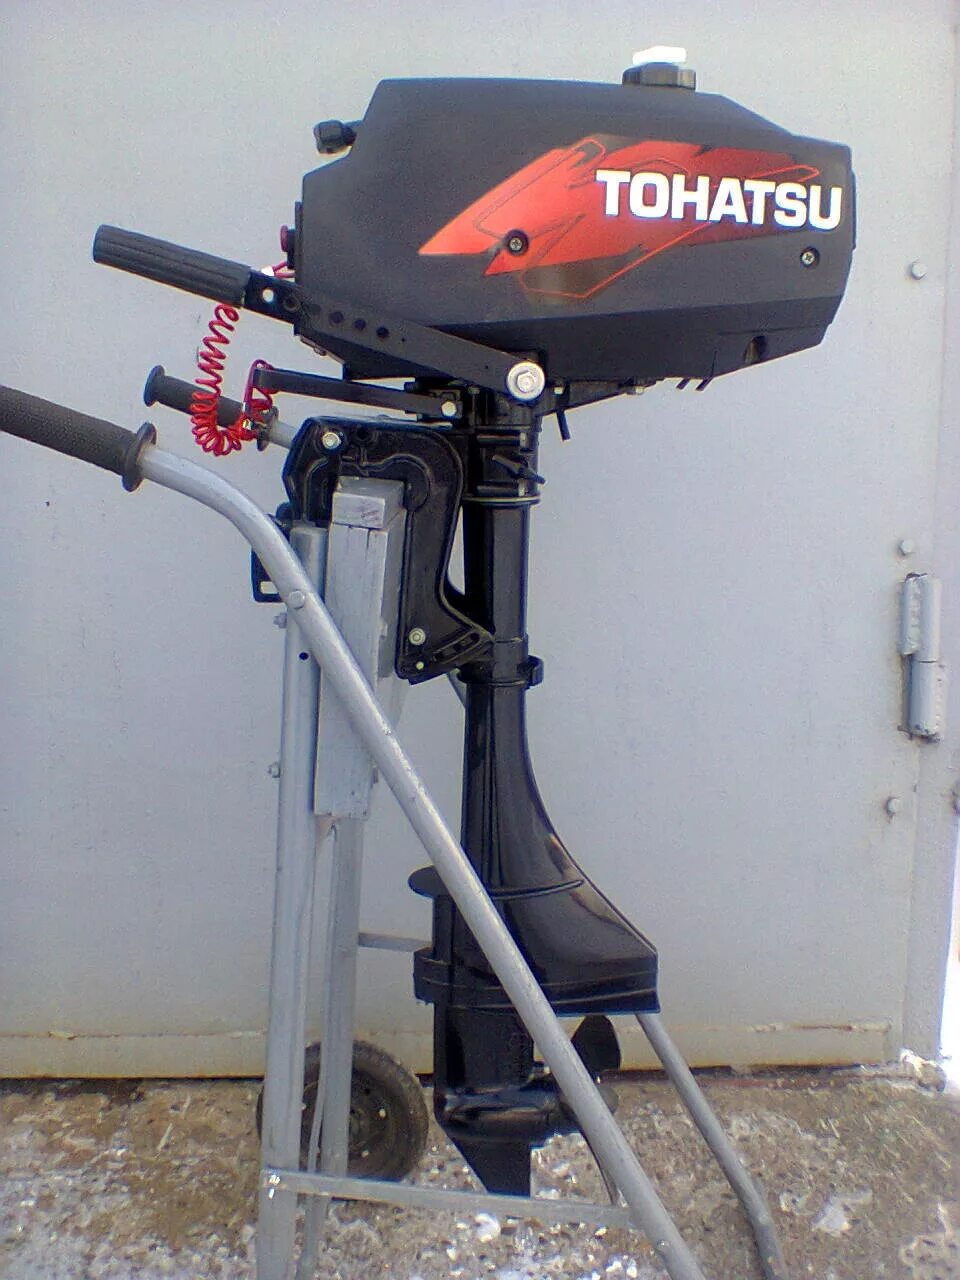 Лодочный мотор Tohatsu m 3.5b2 s. Лодочный мотор Тохатсу 3.5. Лодочный мотор Тохатсу 2.5. Лодочный мотор Tohatsu м 3.5 b2 s. Мотор лодочный 5 л с купить бу